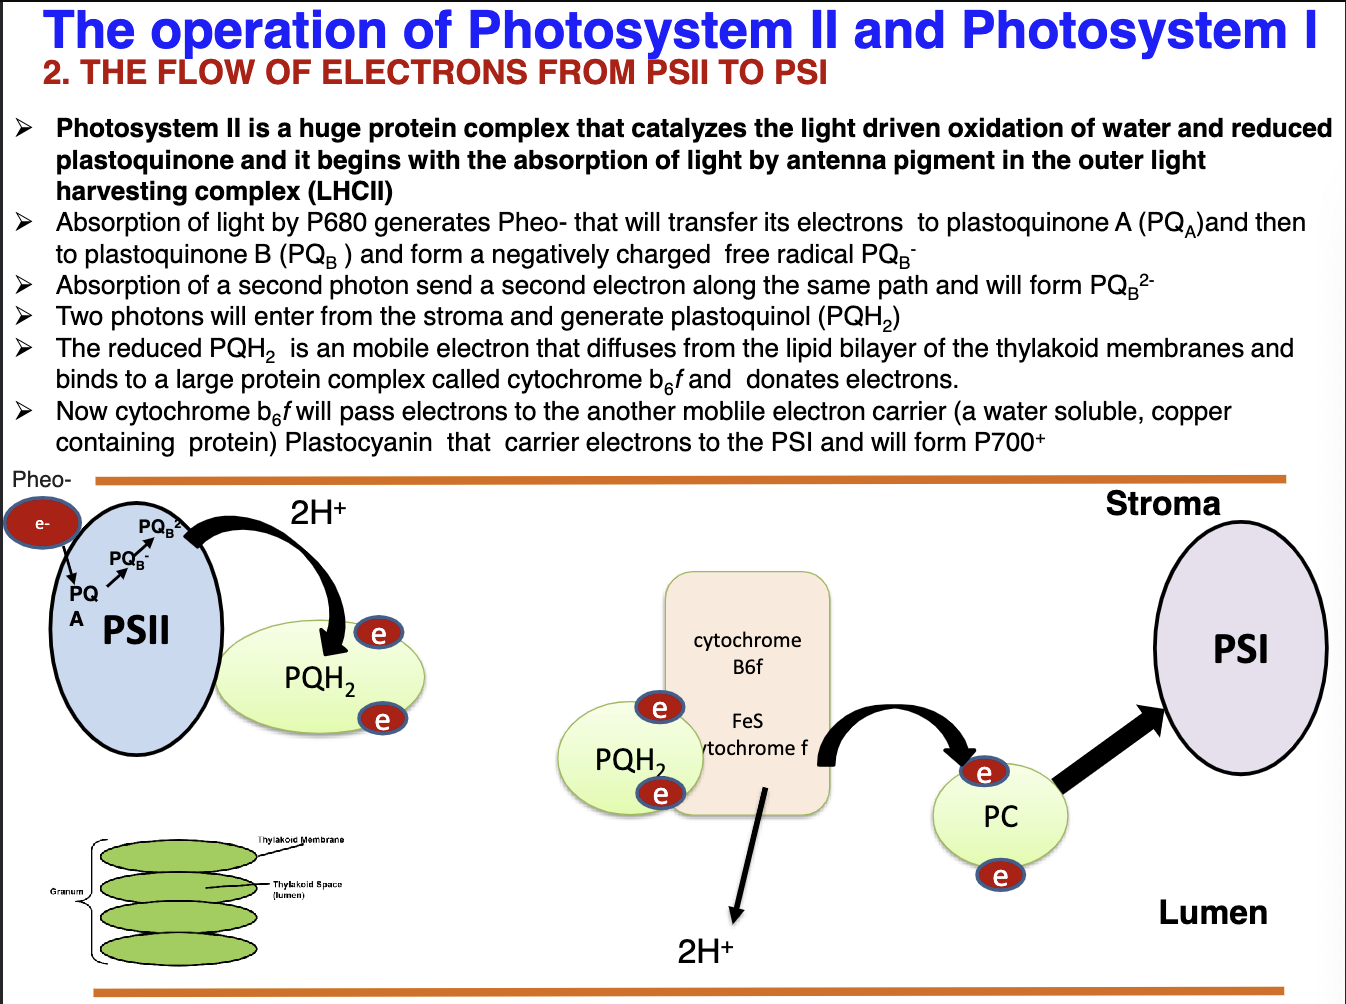 <p>Explain the flow of e- from PSII (P680) to PSI (P700):</p>